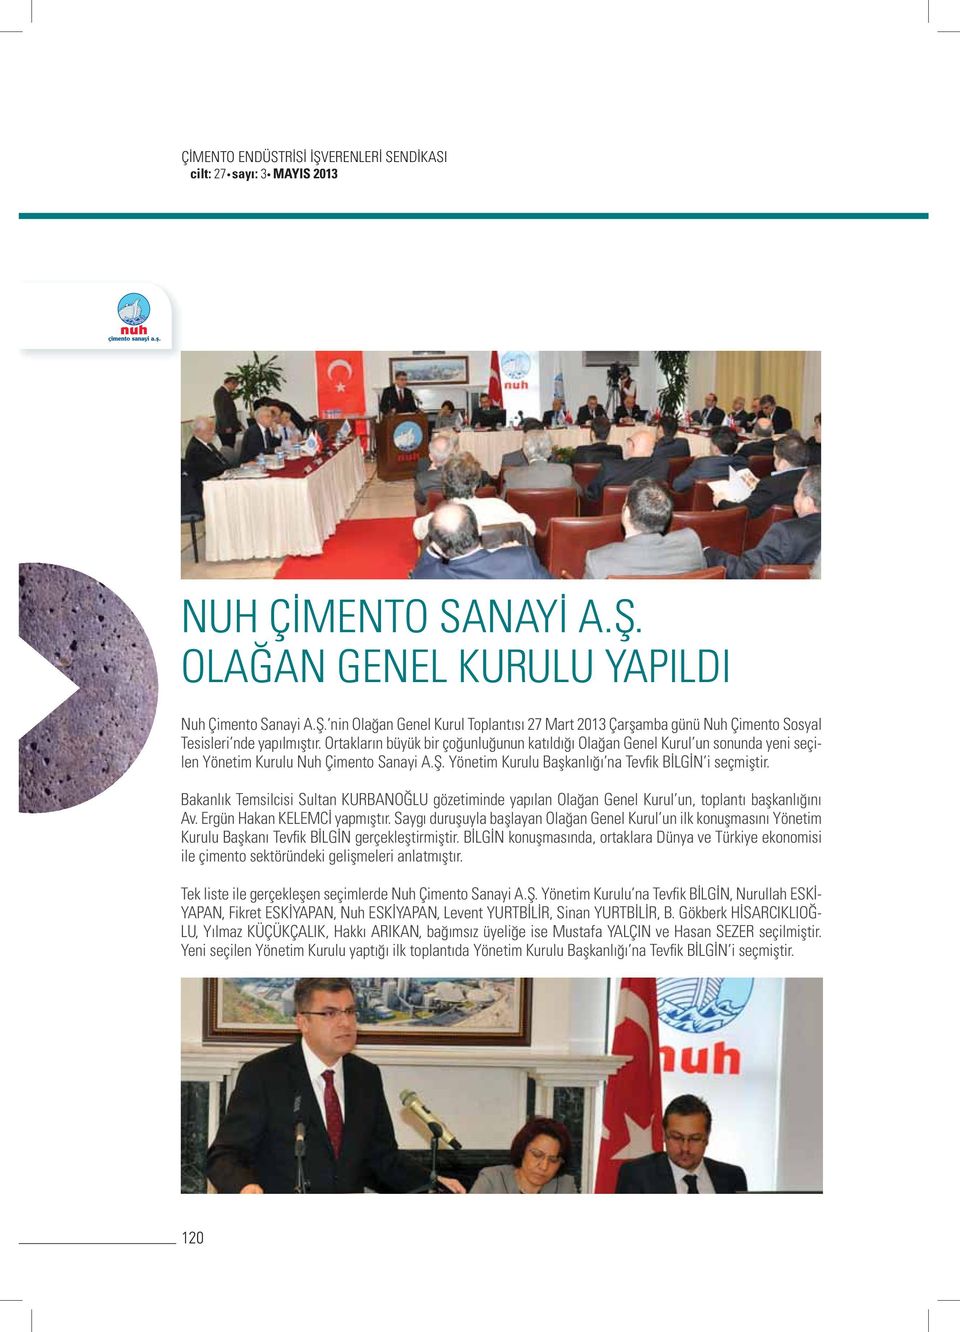 Bakanlık Temsilcisi Sultan KURBANOĞLU gözetiminde yapılan Olağan Genel Kurul un, toplantı başkanlığını Av. Ergün Hakan KELEMCİ yapmıştır.